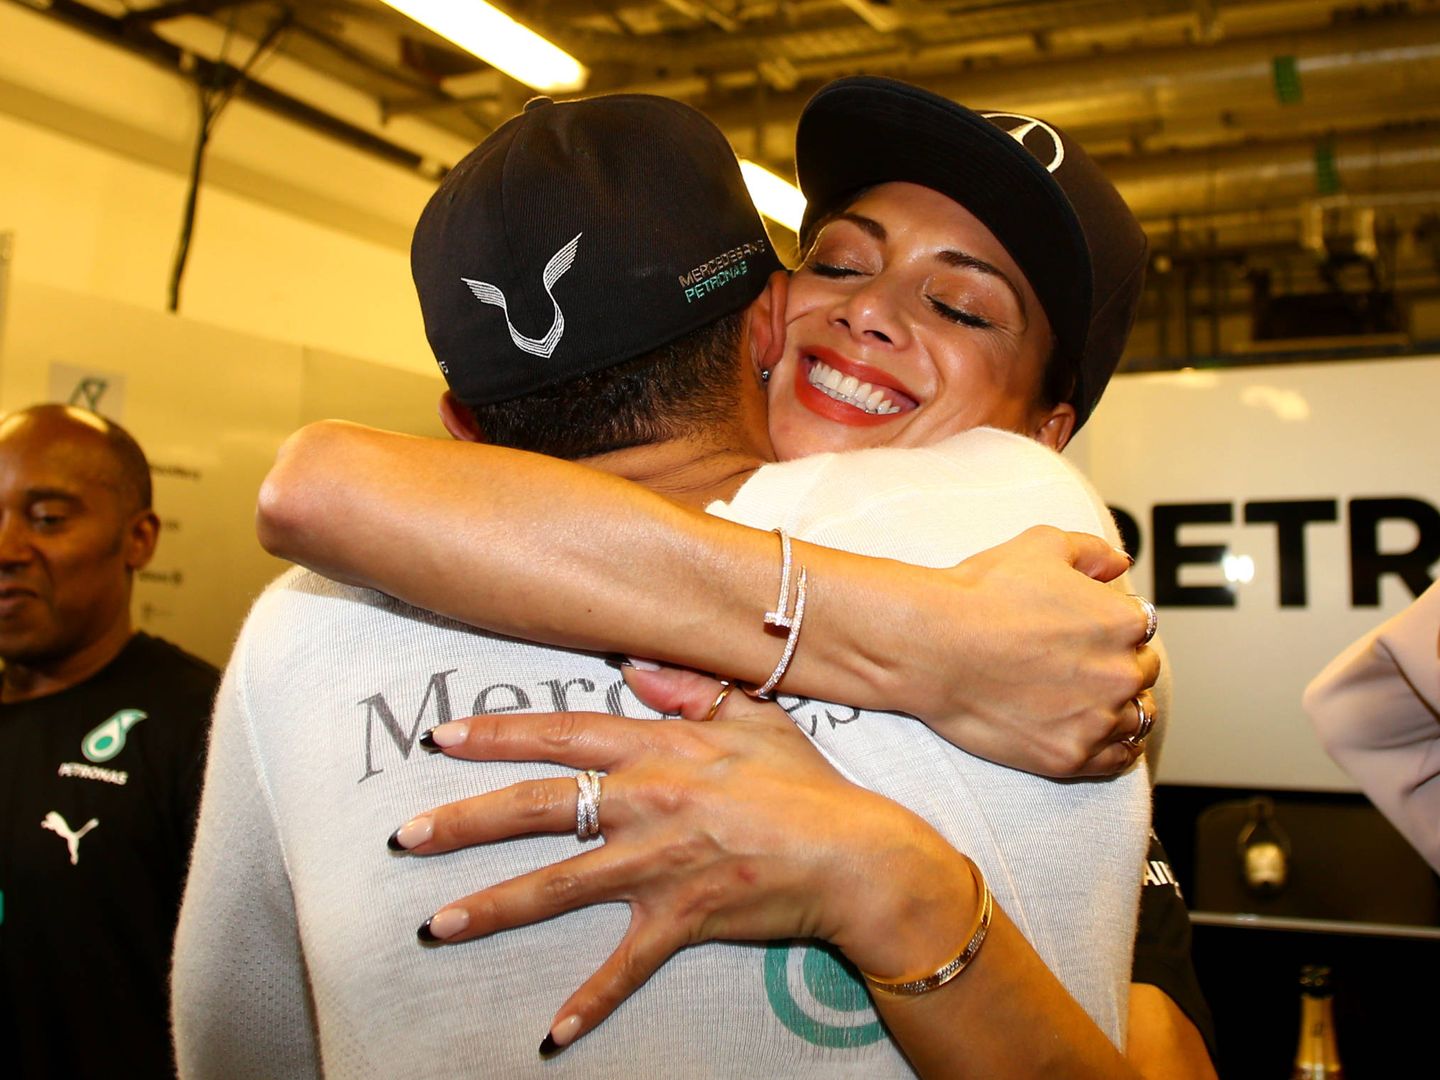 La pareja, celebrando uno de los mundiales del piloto. (Getty)